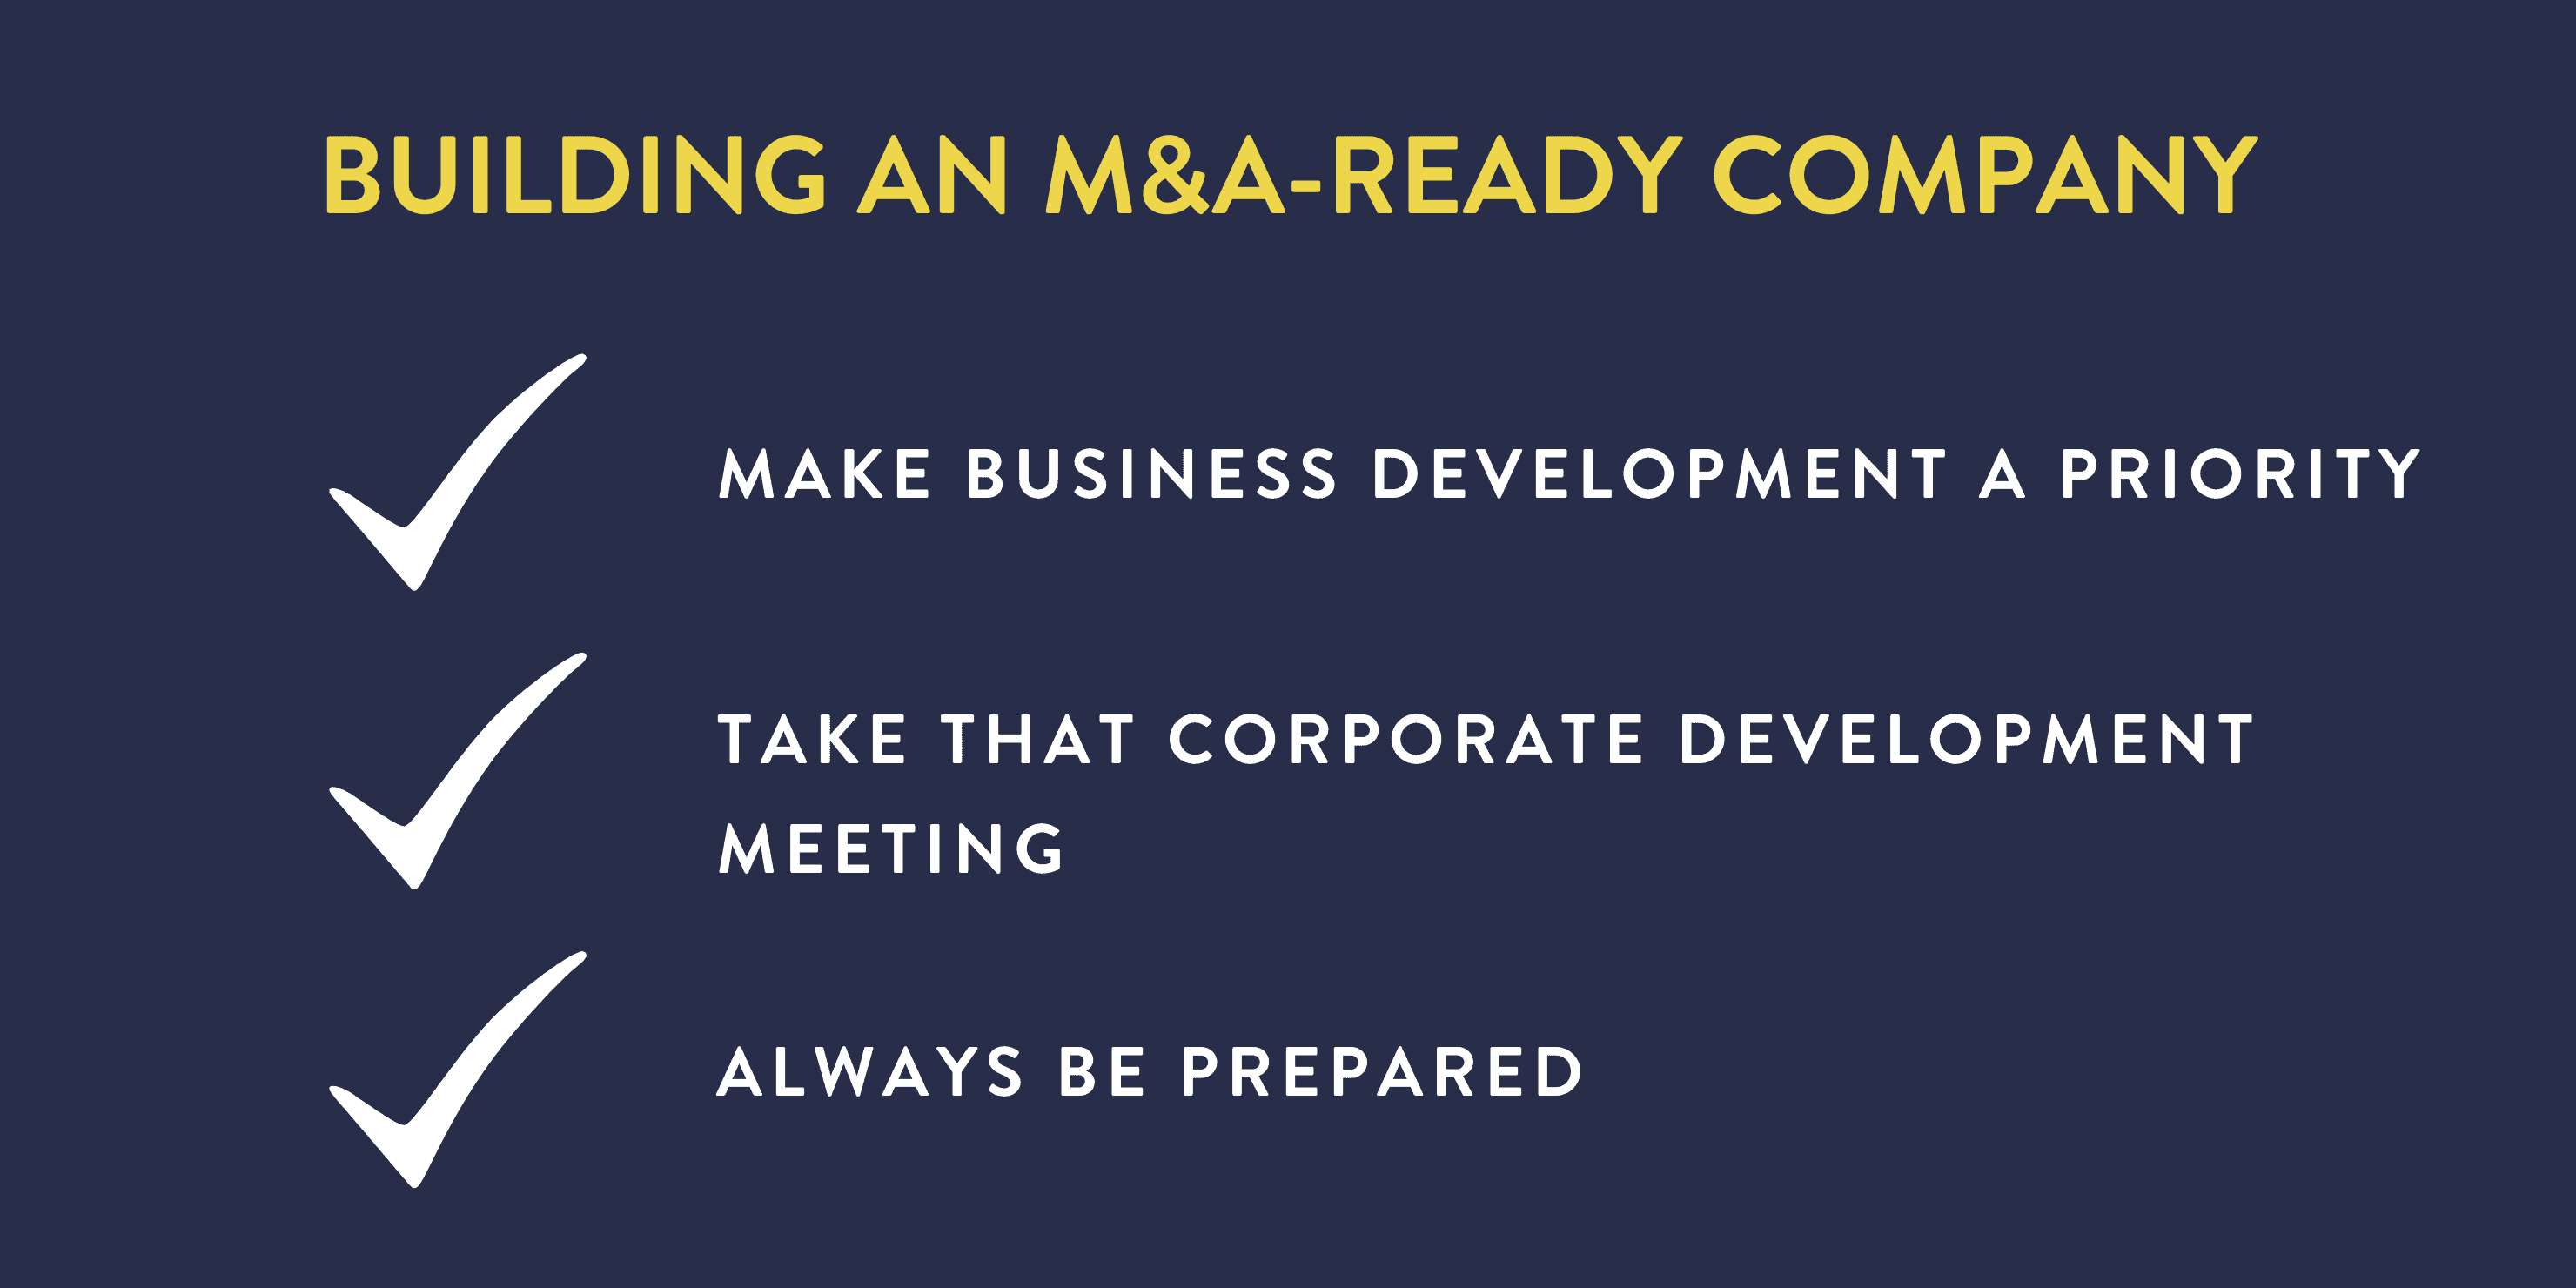 how do you build an M&A ready company